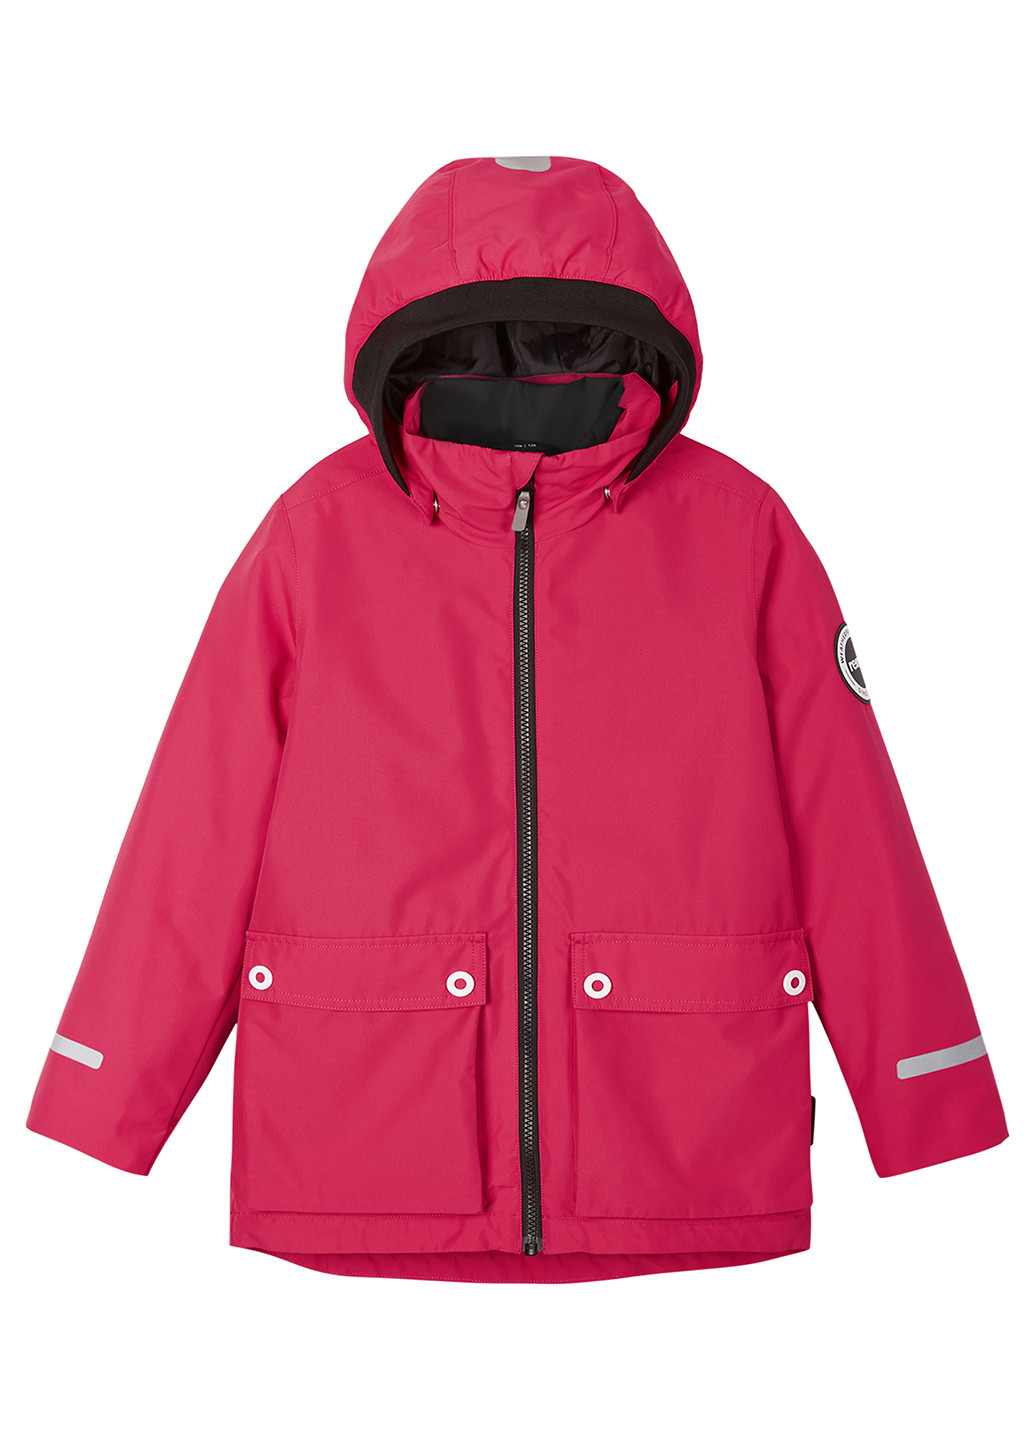 Розовая зимняя куртка 3в1 Reima Syddi